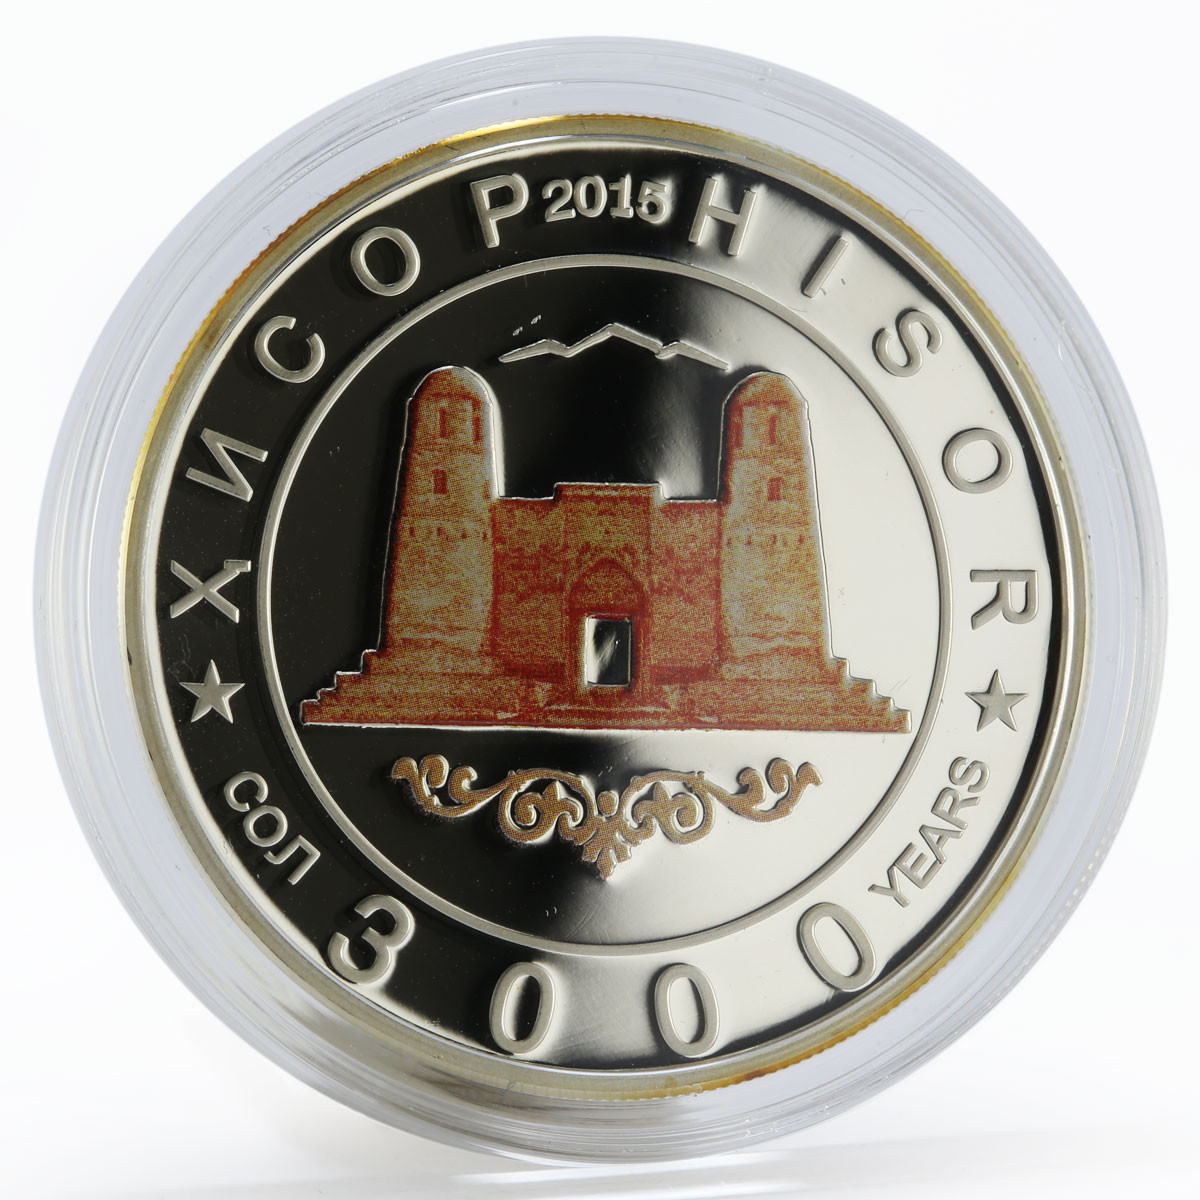 Tajikistan 100 somoni 3000 Years Hisor silver proof coin 2015